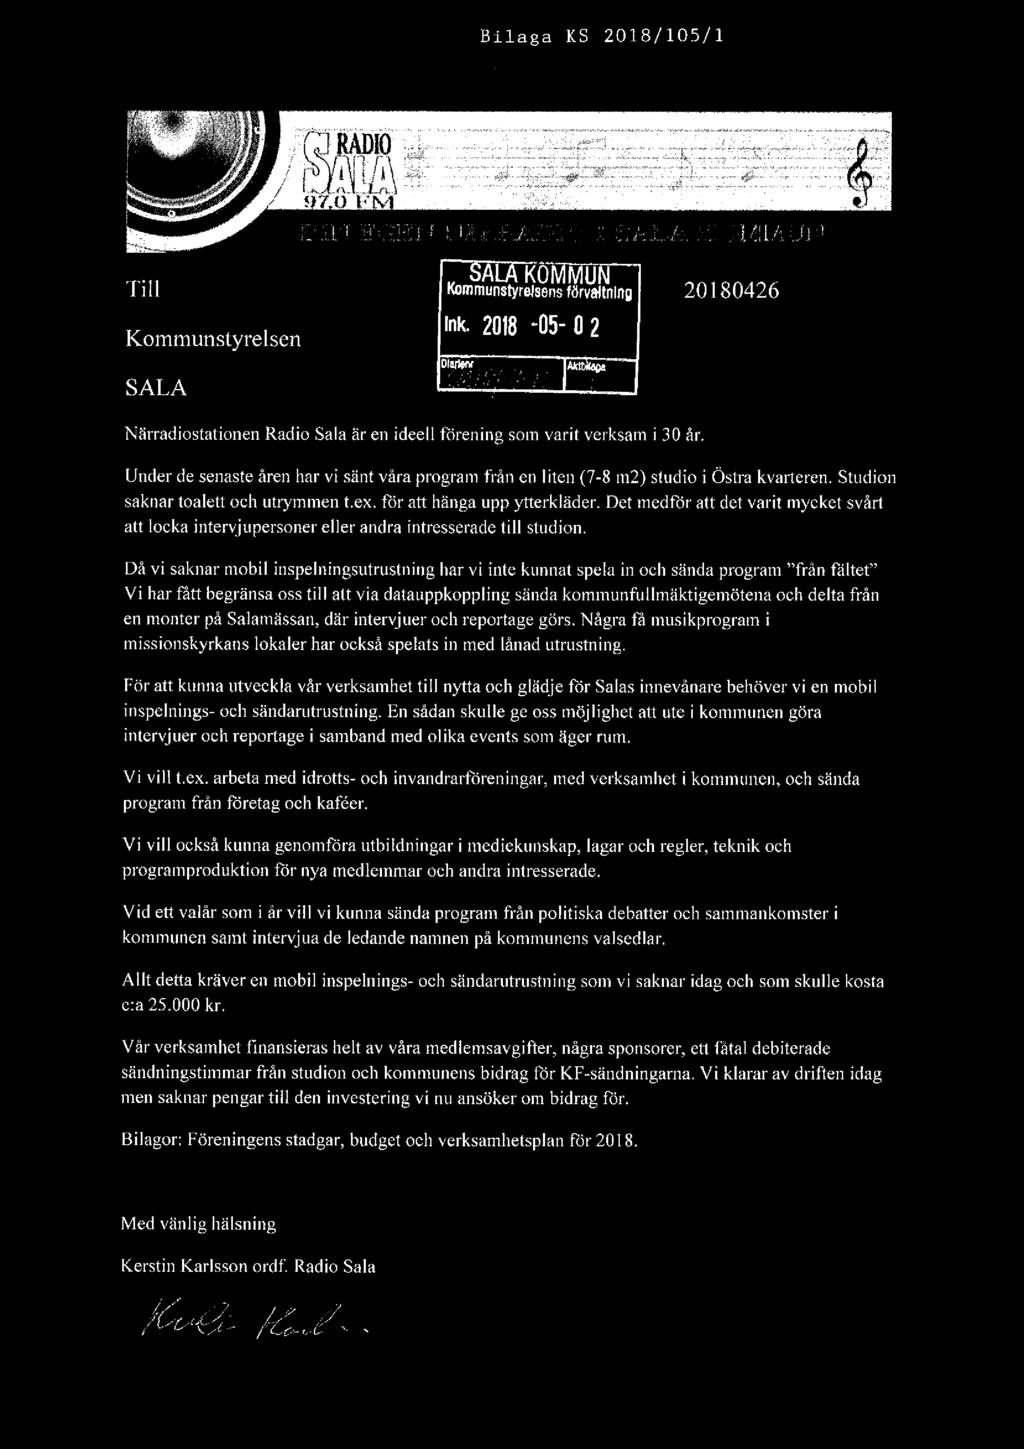 Bilaga KS 2018/105/1 fait ' Ti Kommuflswrelsgns förtlåltnlng 20180426 Kommunstyrelsen Ink. 2013 *05' 02 D. SALA ' fr?. ra; Närradiostationen Radio Sala är en ideell förening som varit verksam i 30 år.